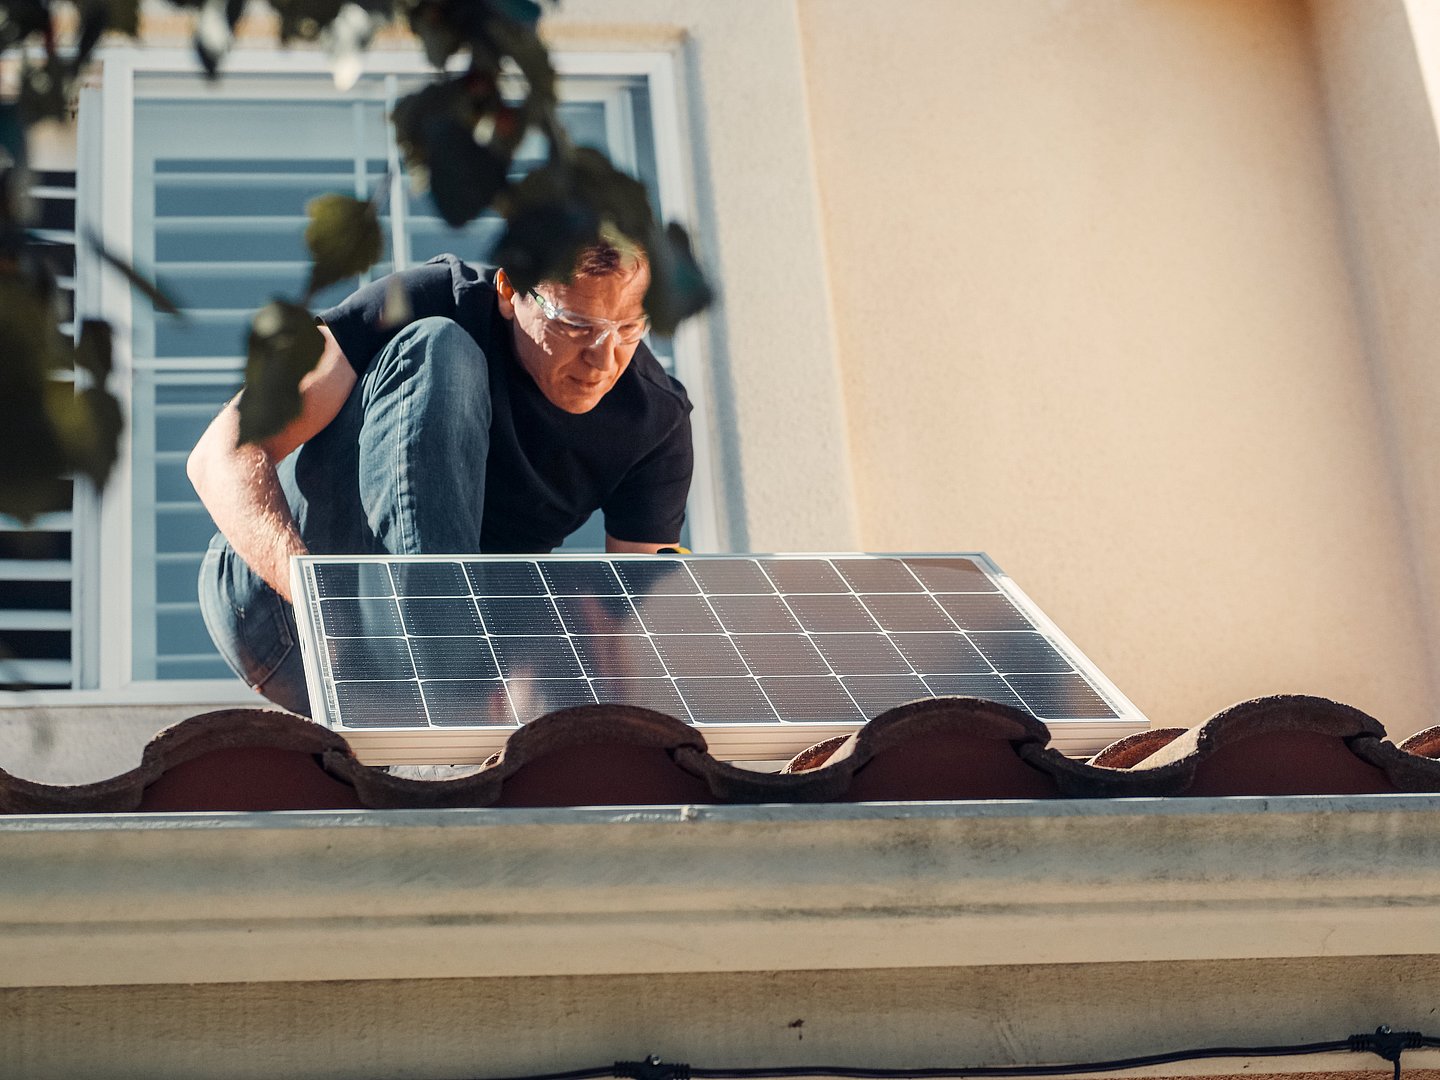 Mann mit Schutzbrille installiert kleines Solarpanel auf dem Dach